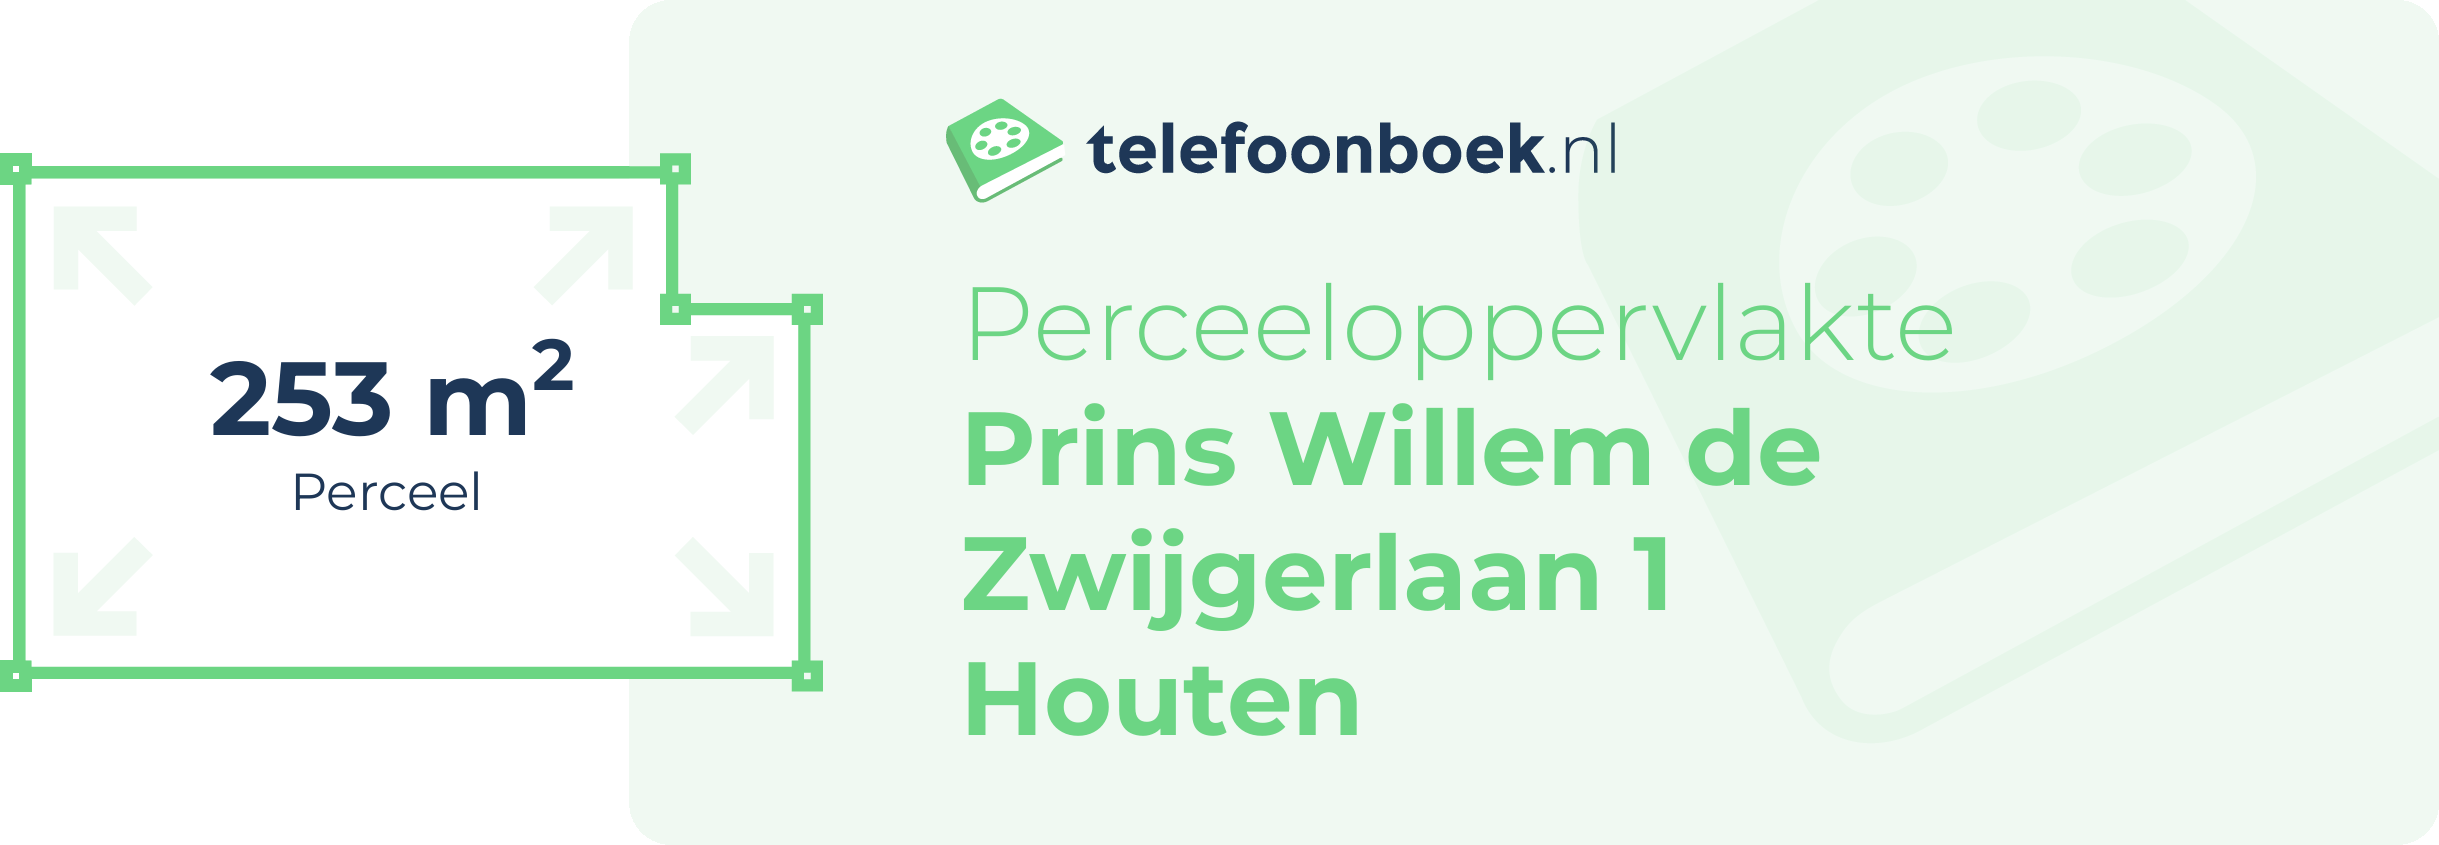 Perceeloppervlakte Prins Willem De Zwijgerlaan 1 Houten